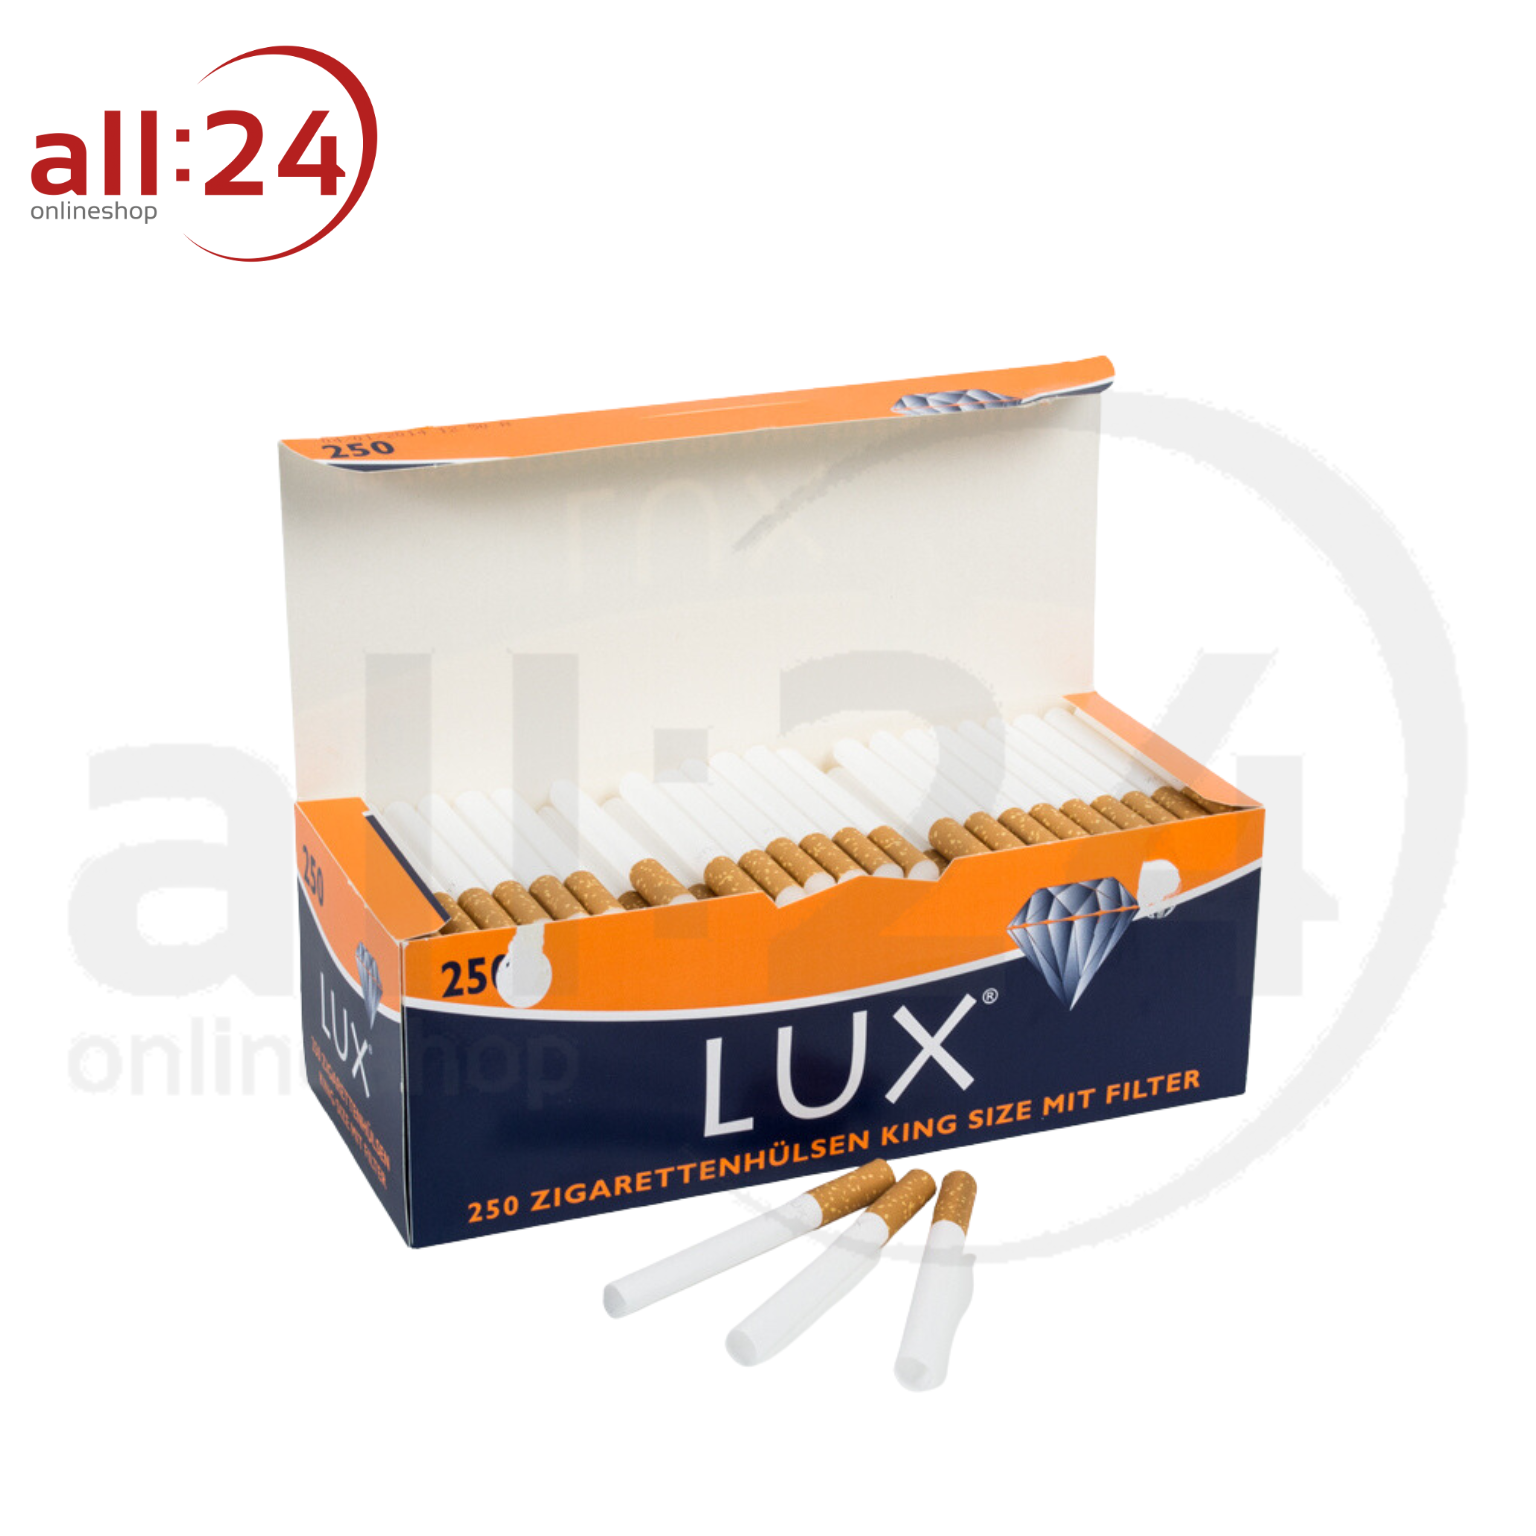 LUX Zigarettenhülsen - Packung mit 250 Stück 